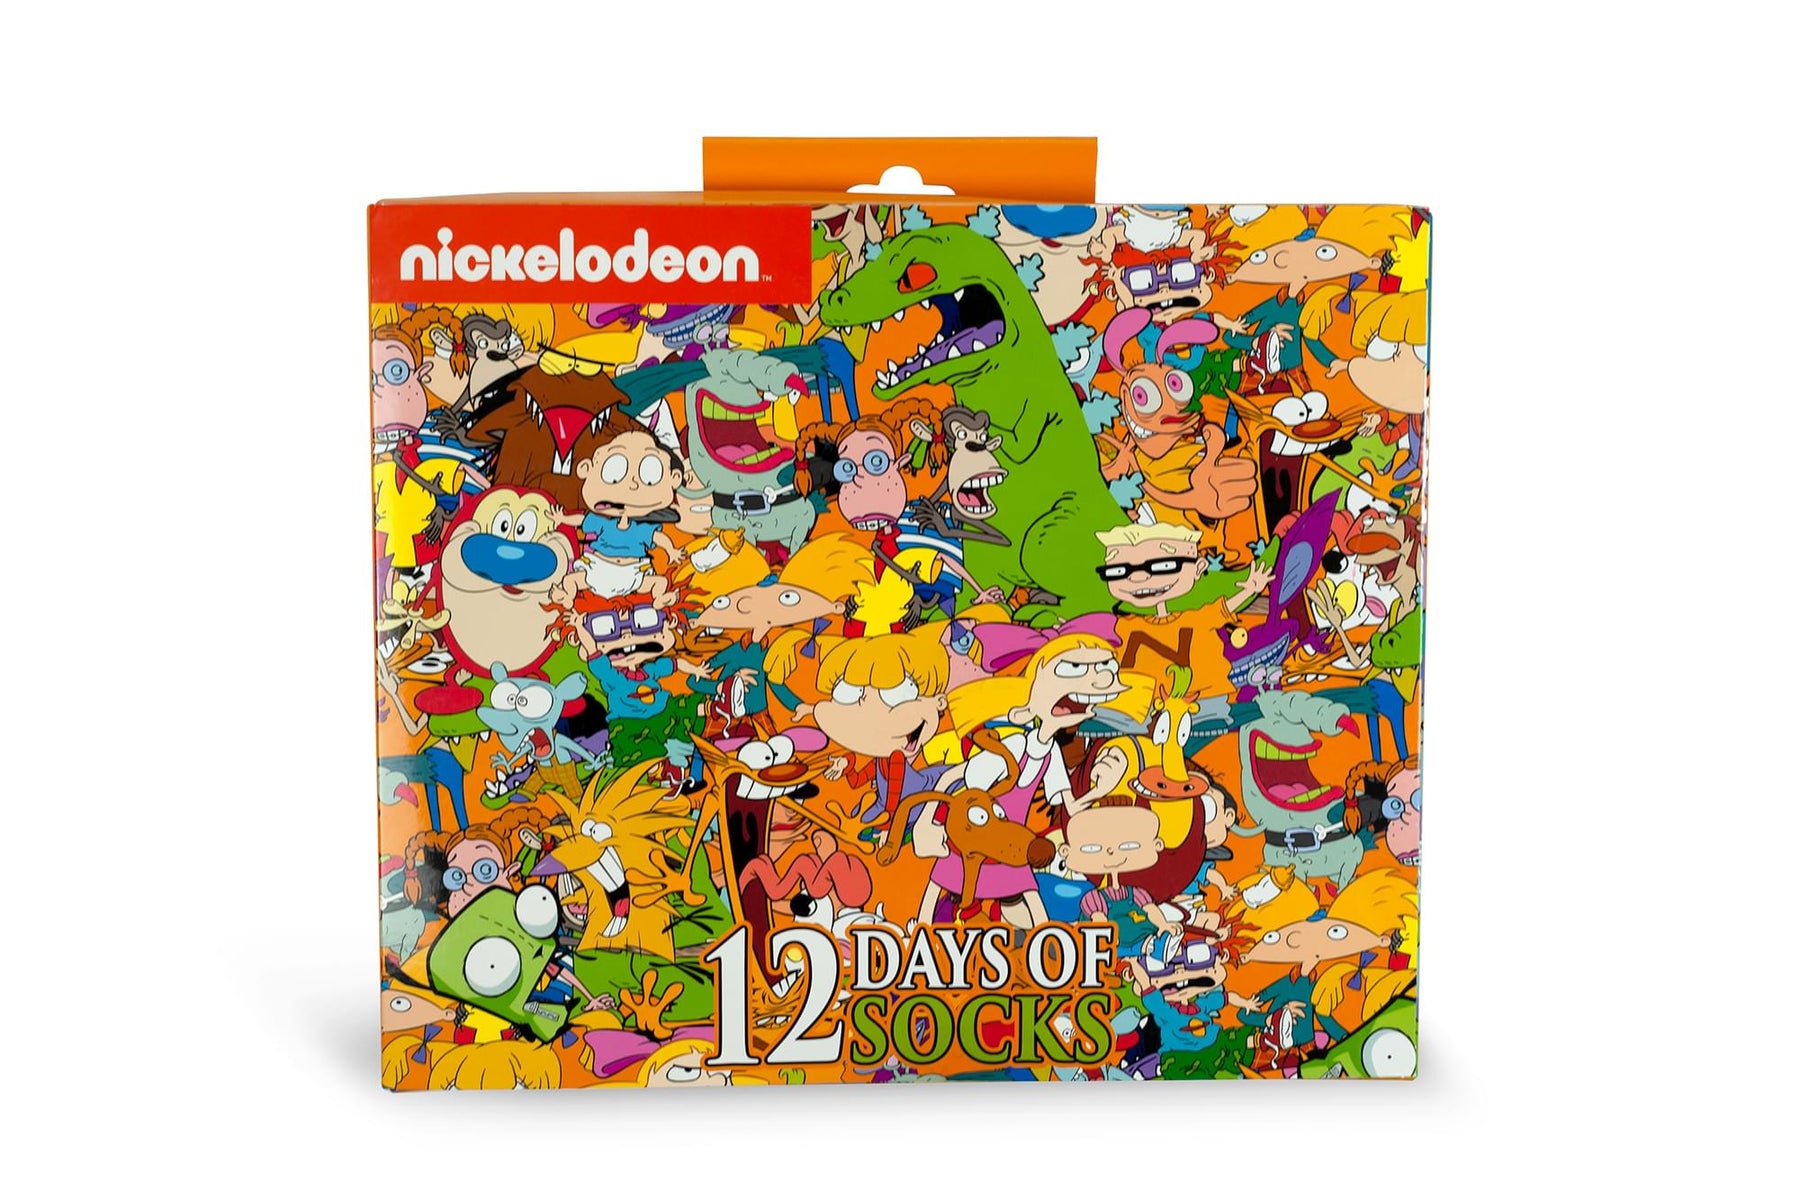 Nickelodeon 12 Days of Socks Gift Set for Men & Women | 6 Crew | 6 Ankle